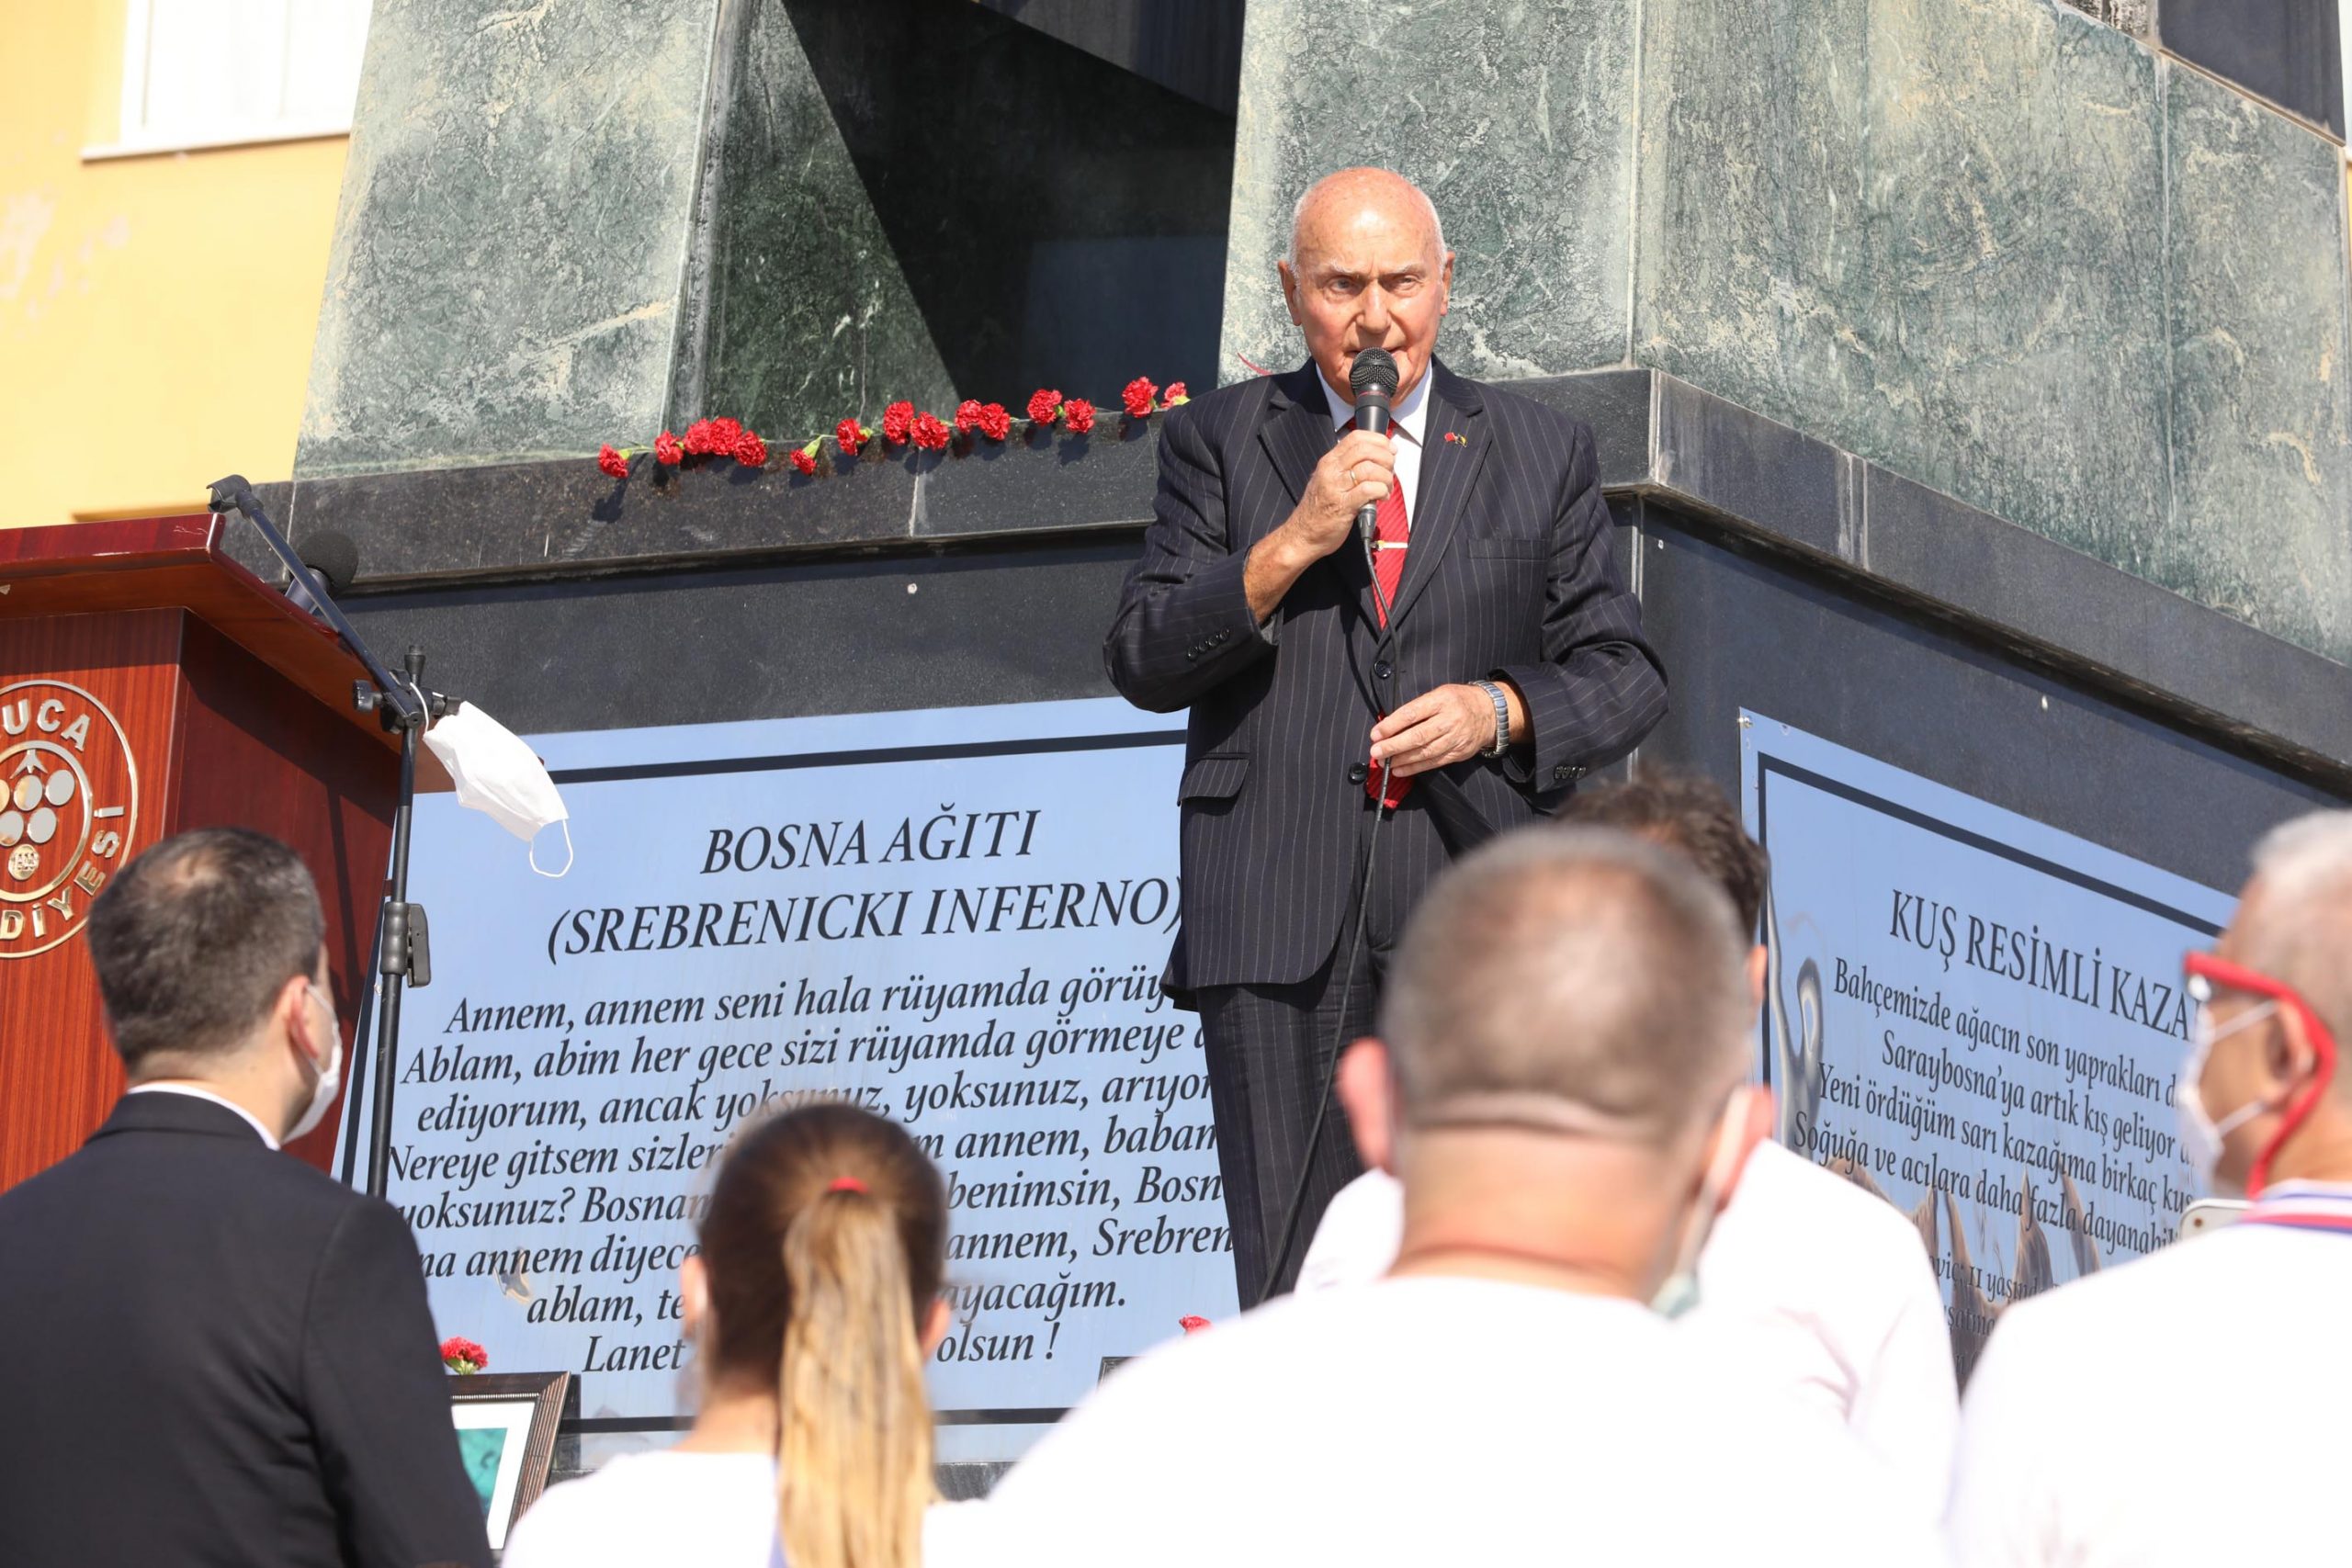 Srebrenitsa Soykırımı 25 Yıldönümünde Buca anıldı